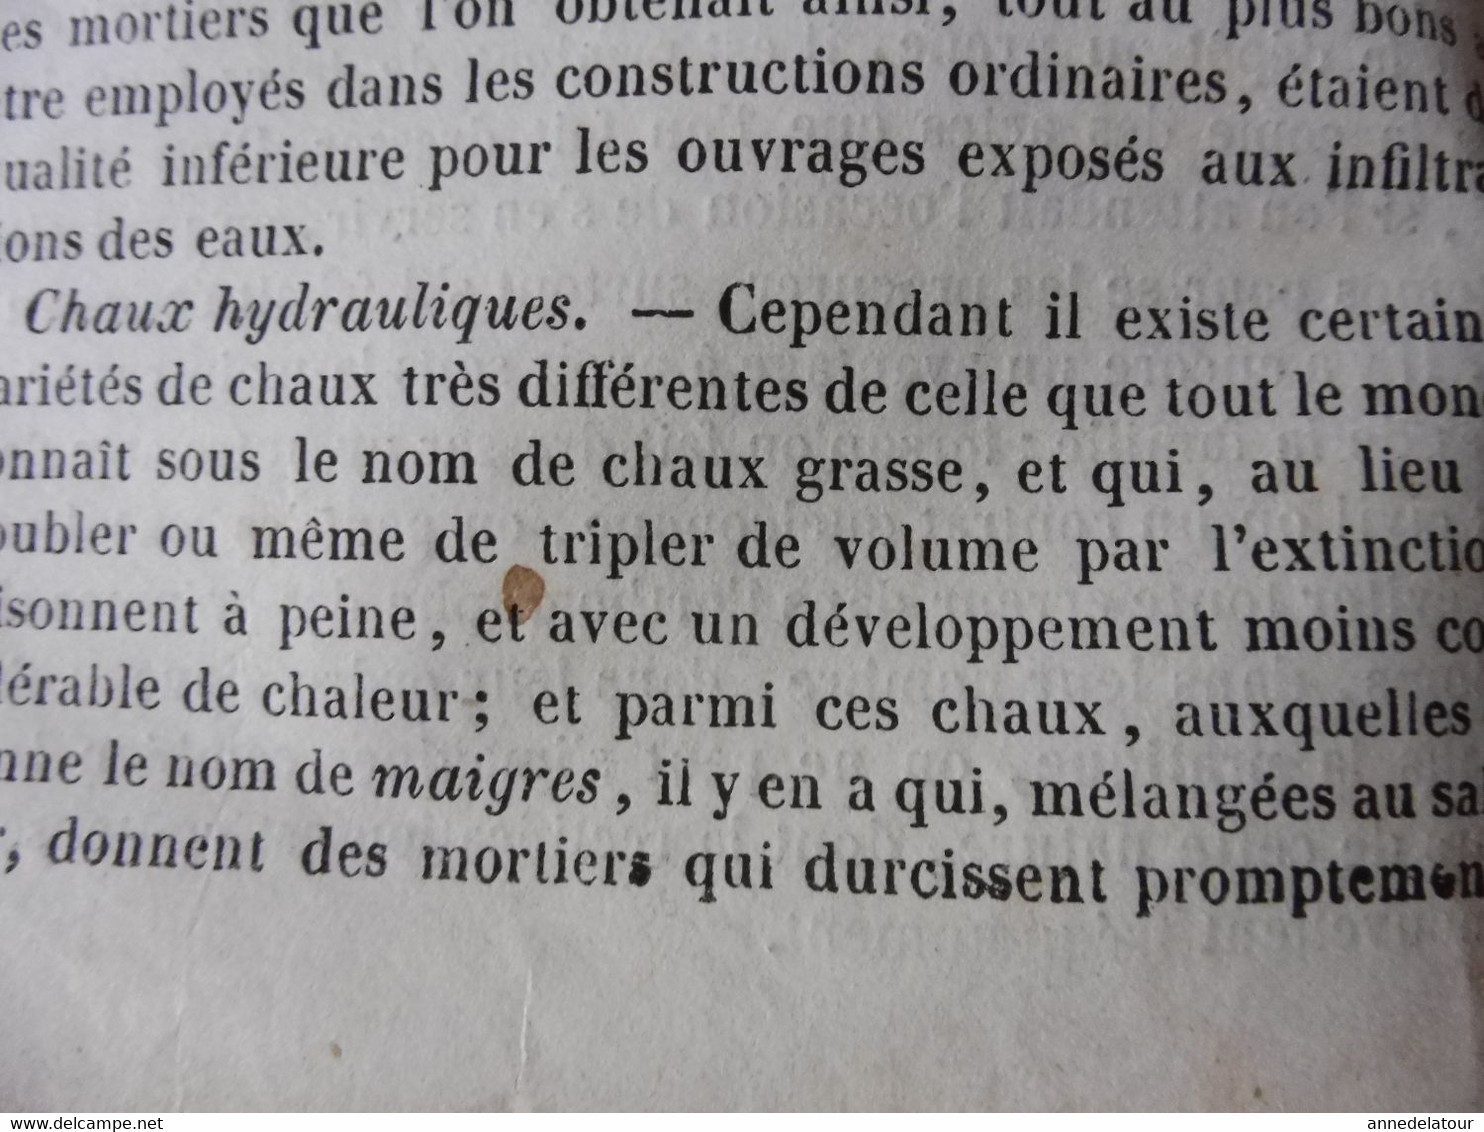 Année 1839:Gravure ( Cathédrale de Séville , cour des Orangers);Secret du ciment romain; Pierre bornale bretonne; etc